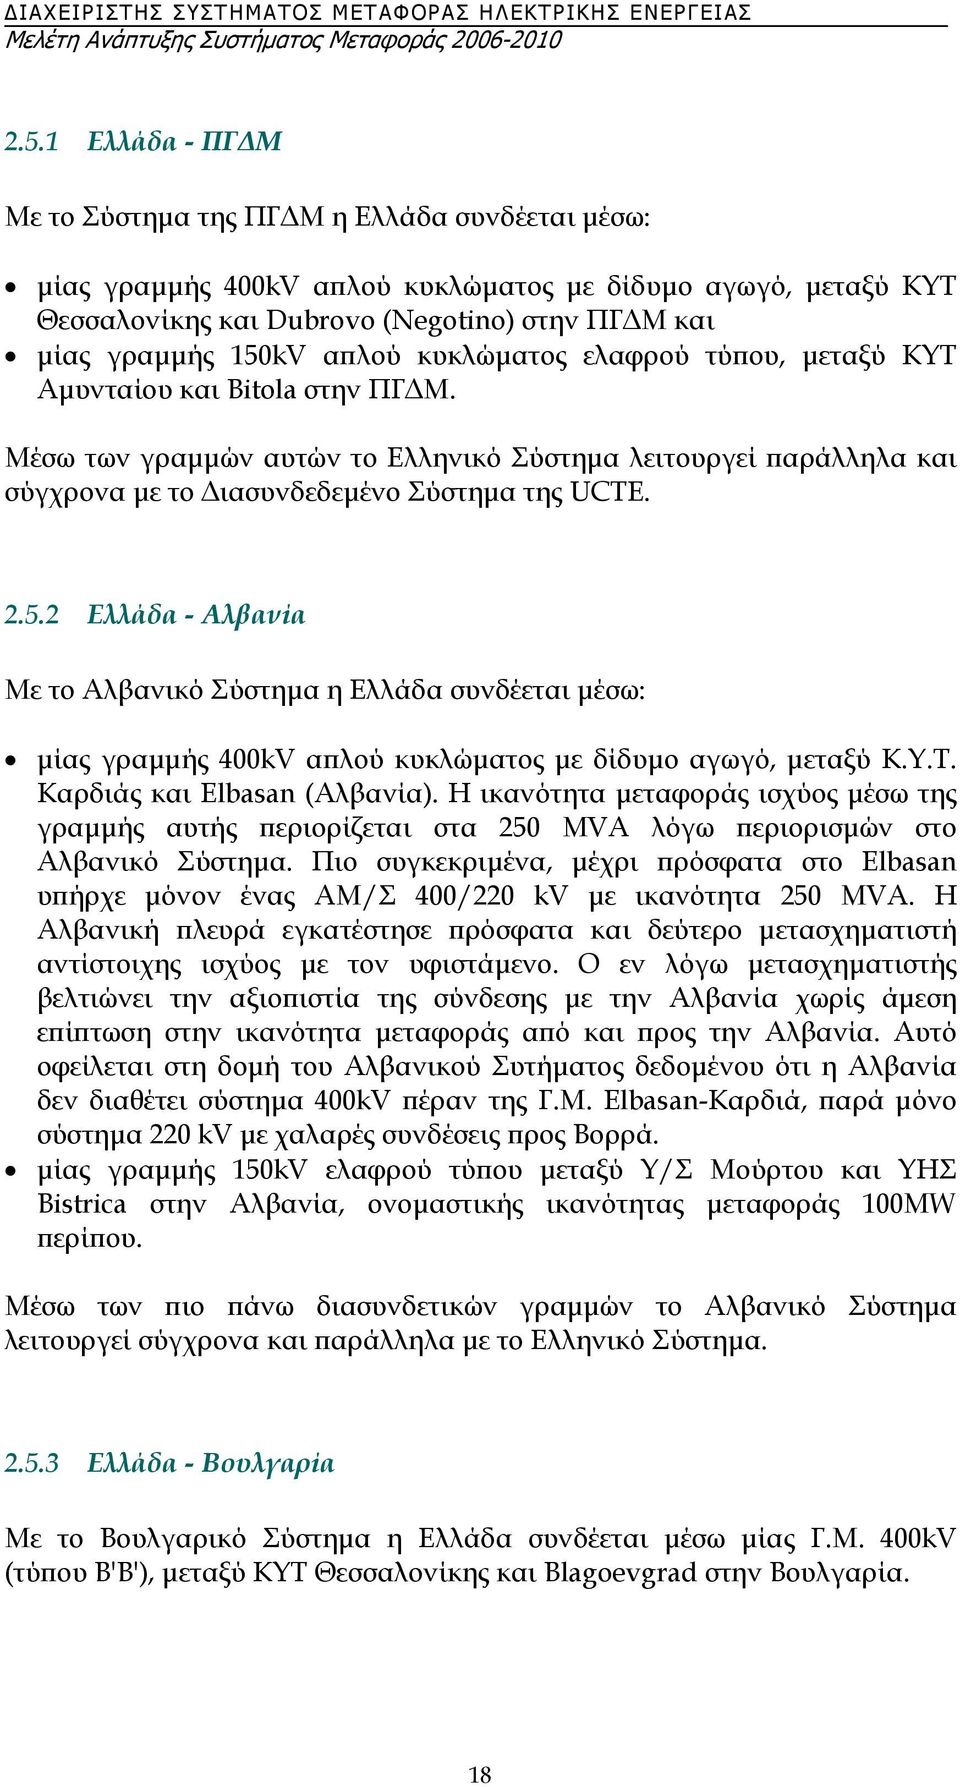 Υ.Τ. Καρδιάς και Elbasan (Αλβανία). Η ικανότητα µεταφοράς ισχύος µέσω της γραµµής αυτής περιορίζεται στα 250 MVA λόγω περιορισµών στο Αλβανικό Σύστηµα.